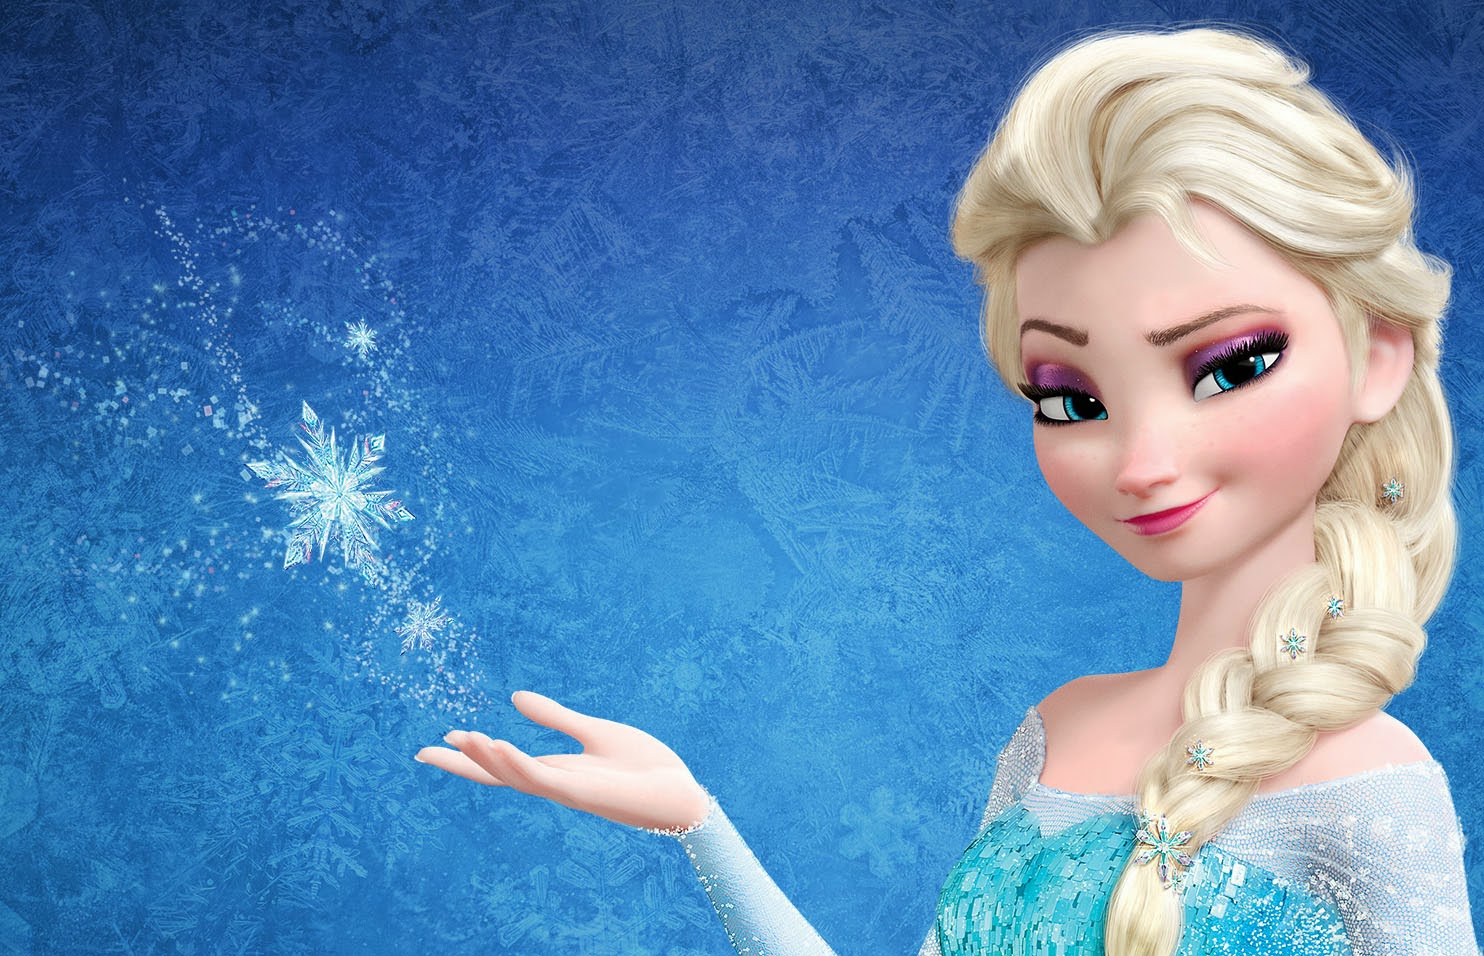 Snow Queen Elsa In Frozen Wide   1484x956 iWallHD   Wallpaper HD